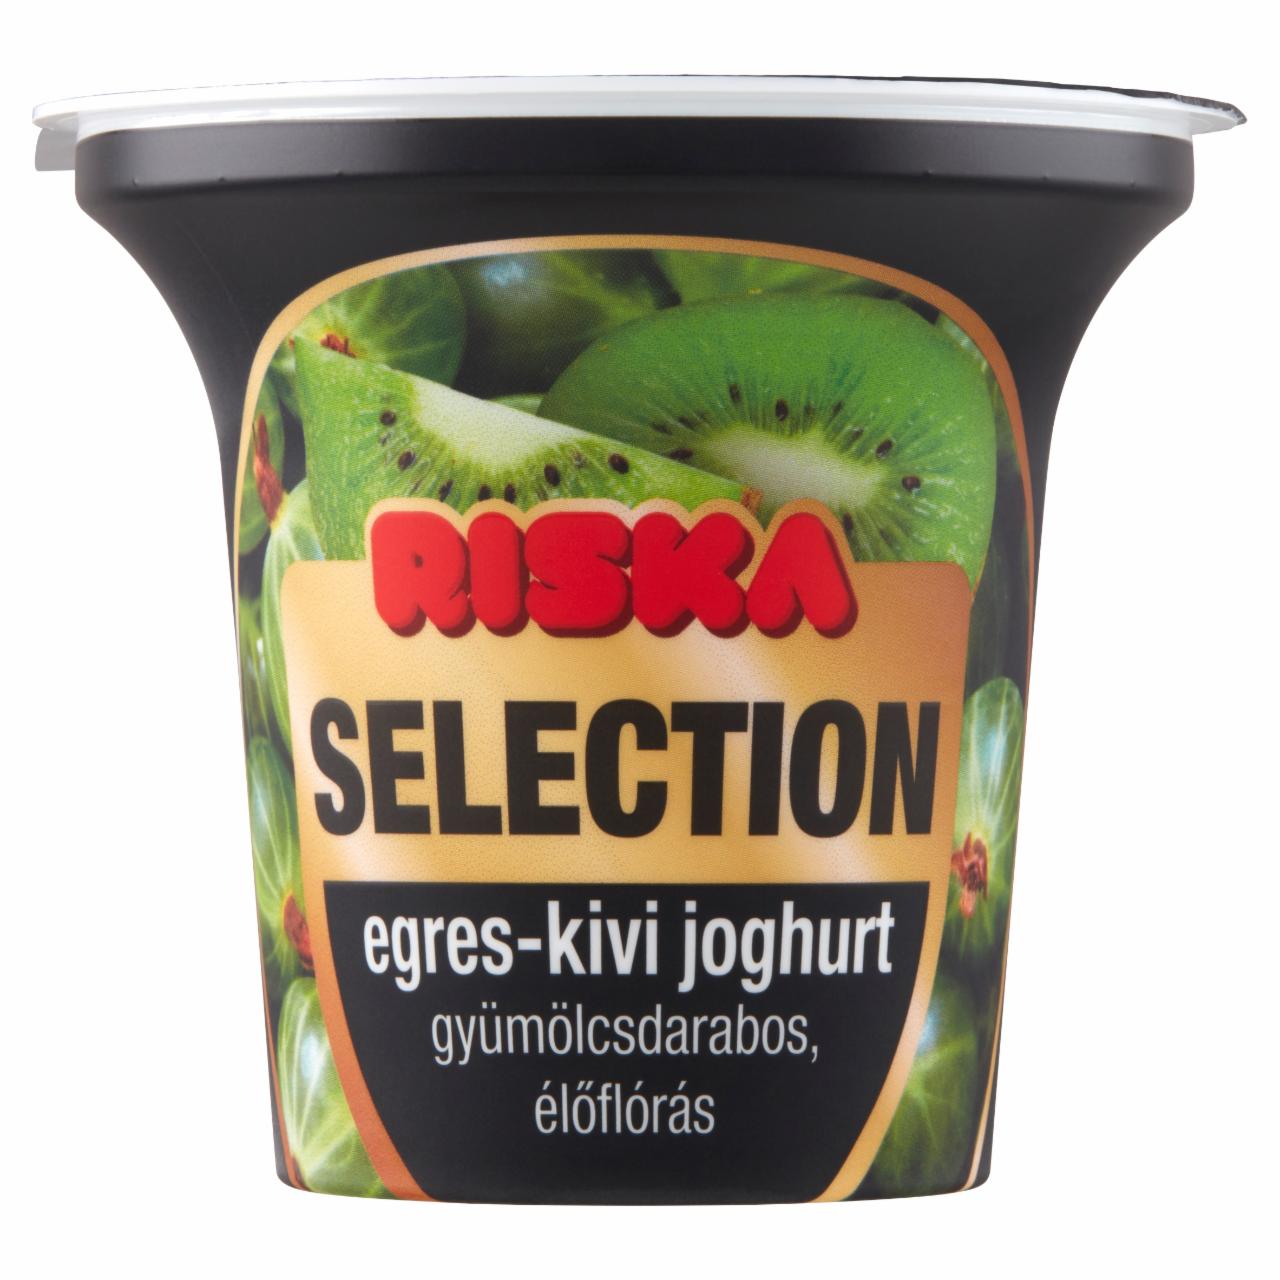 Képek - Riska Selection gyümölcsdarabos, élőflórás egres-kivi joghurt 200 g